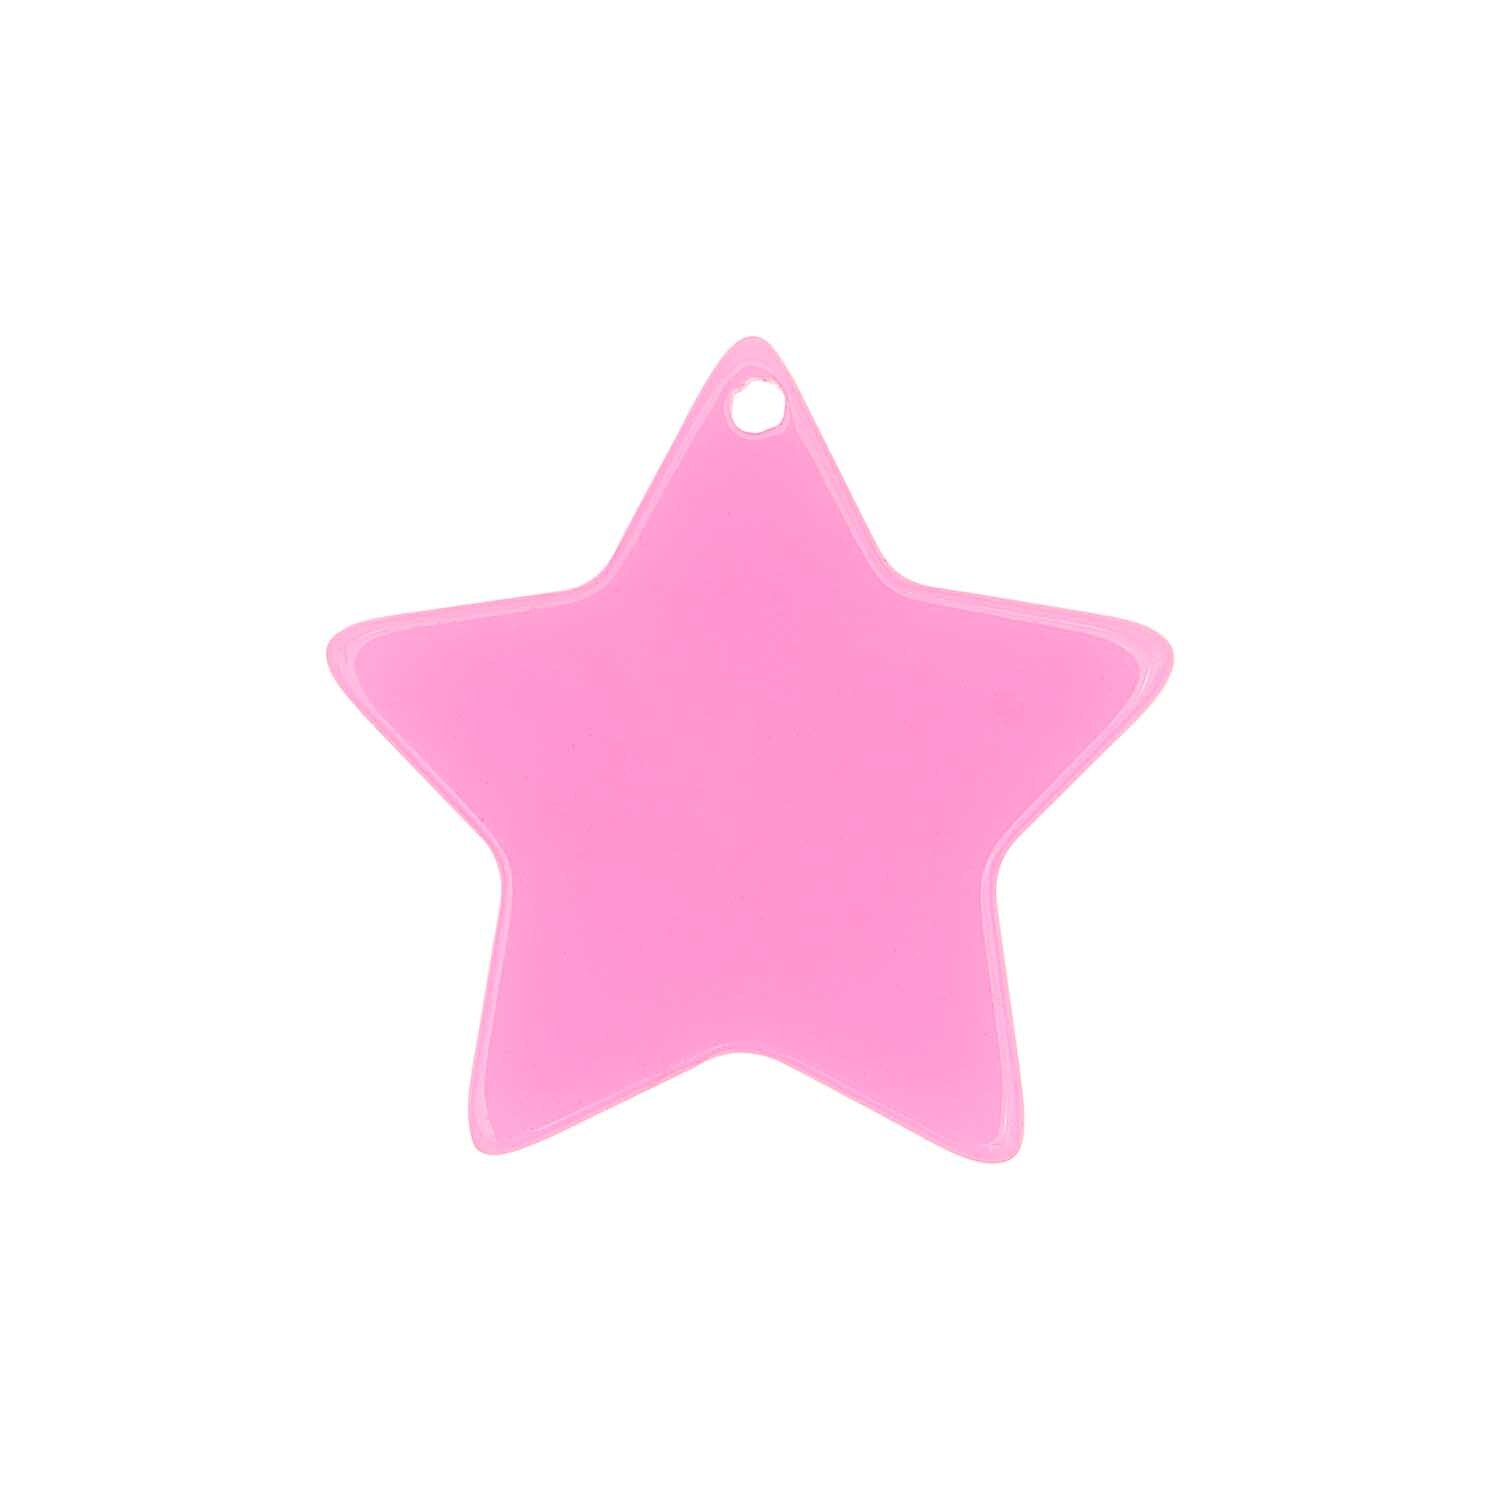 itoshii Stern Scheibe neon pink 30x1mm 1 Stück